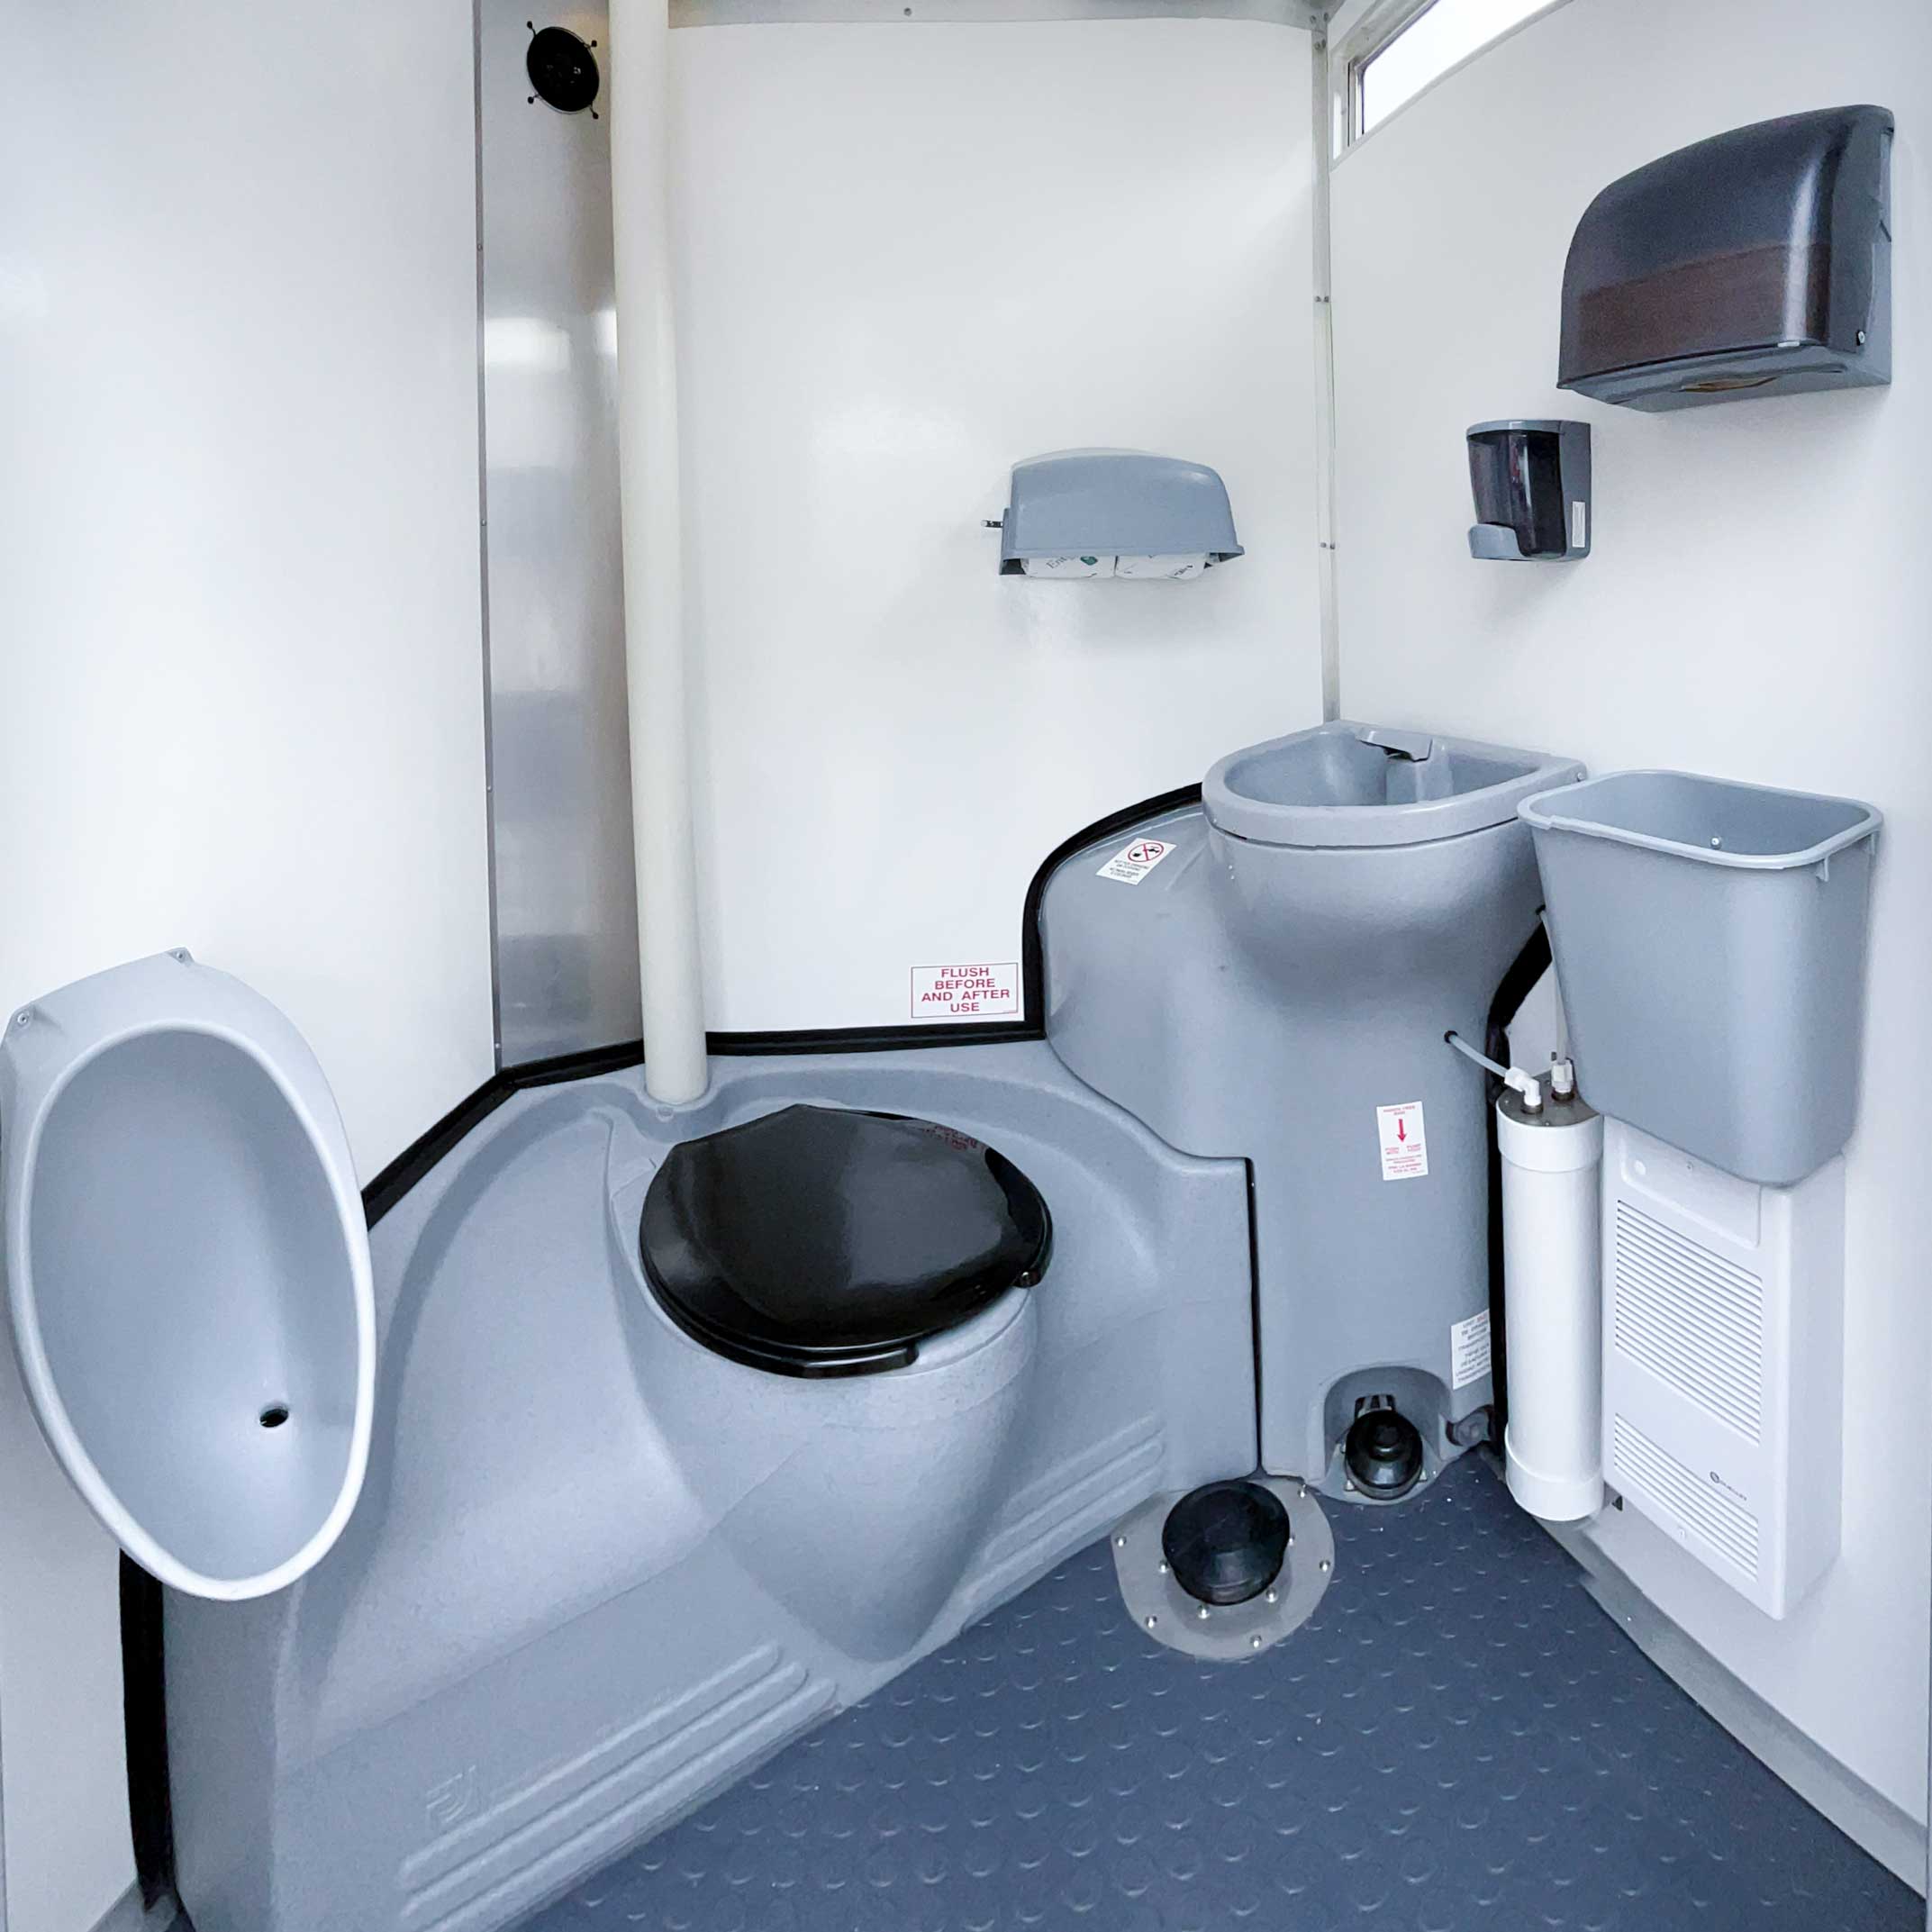 Handysan : Location WC toilette autonome chimique pour PMR avec entretien